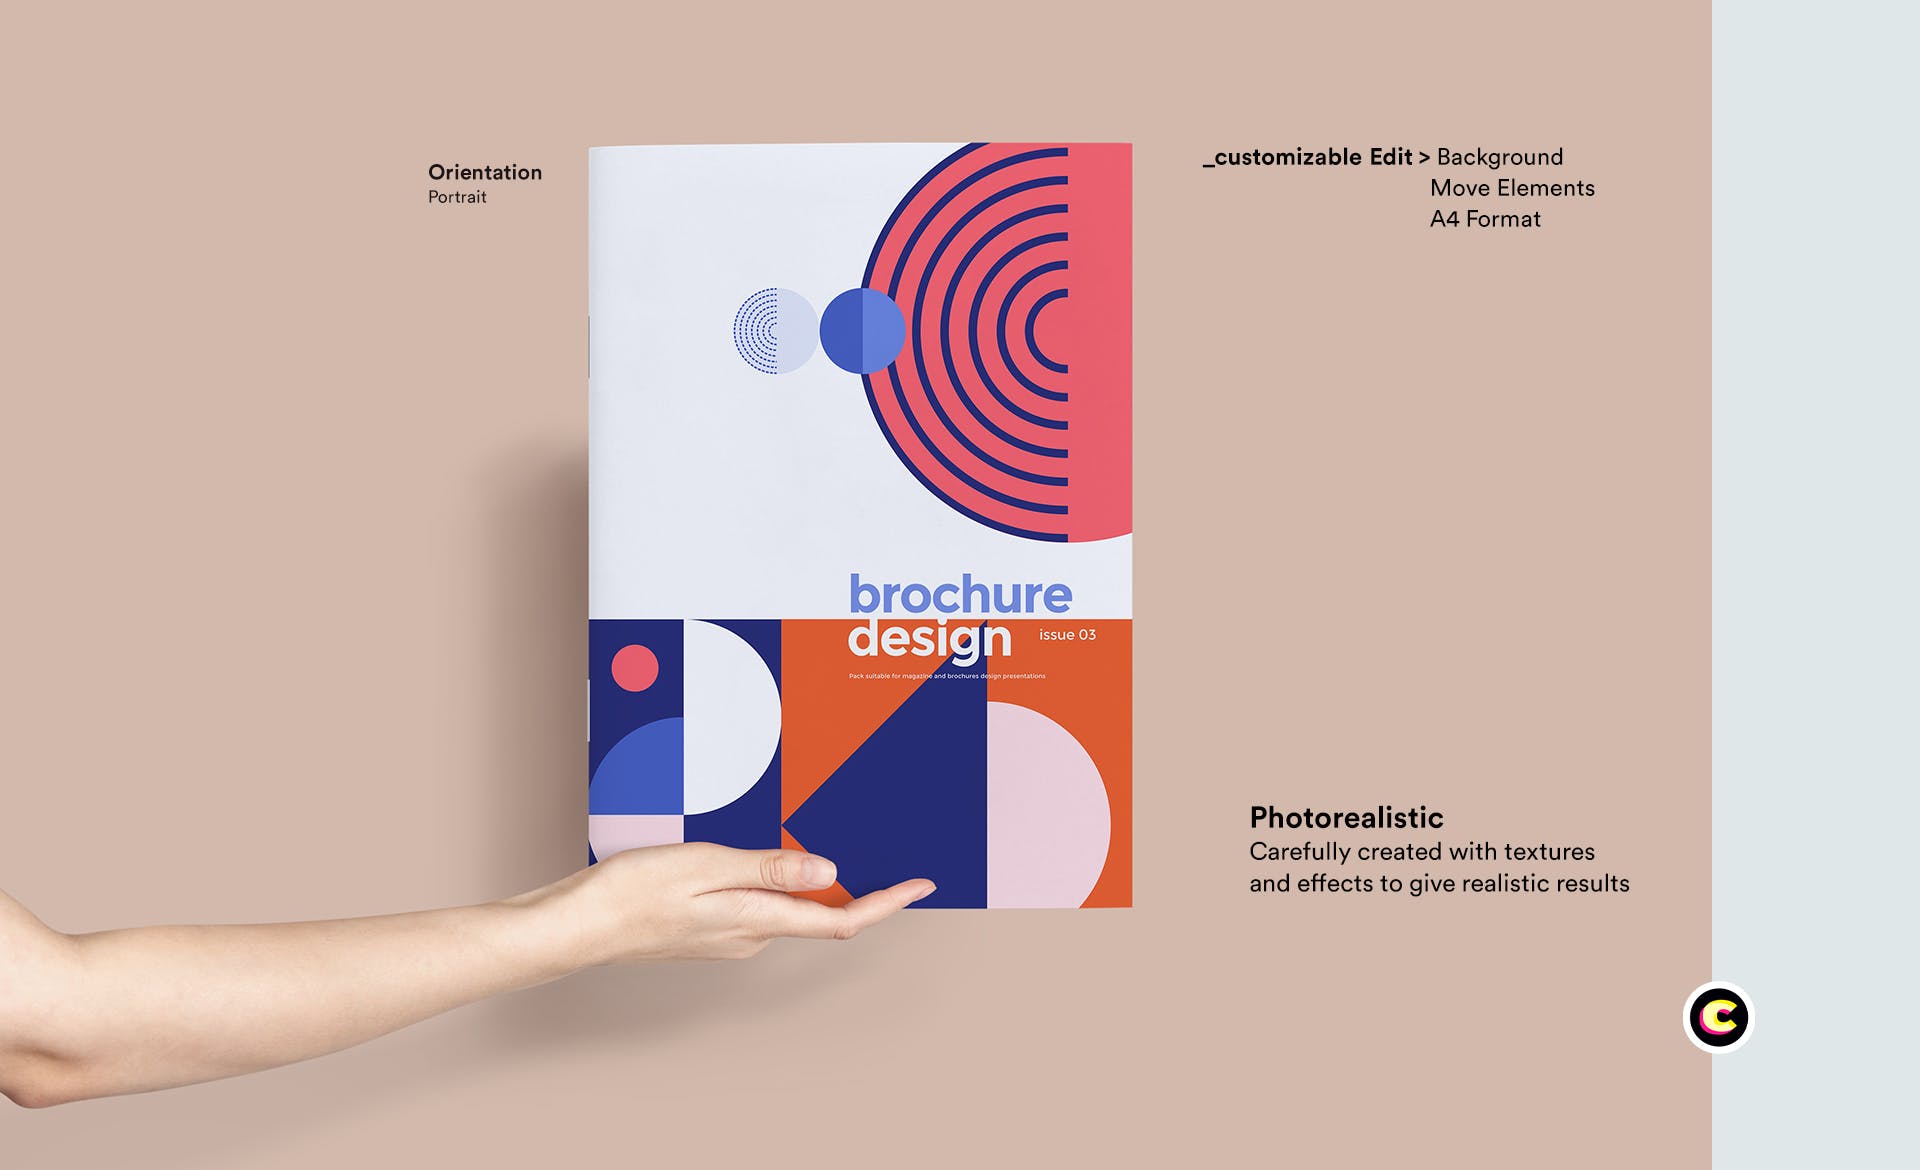 企业品牌画册/宣传册封面设计效果图样机非凡图库精选 Brochure Mockup插图(1)